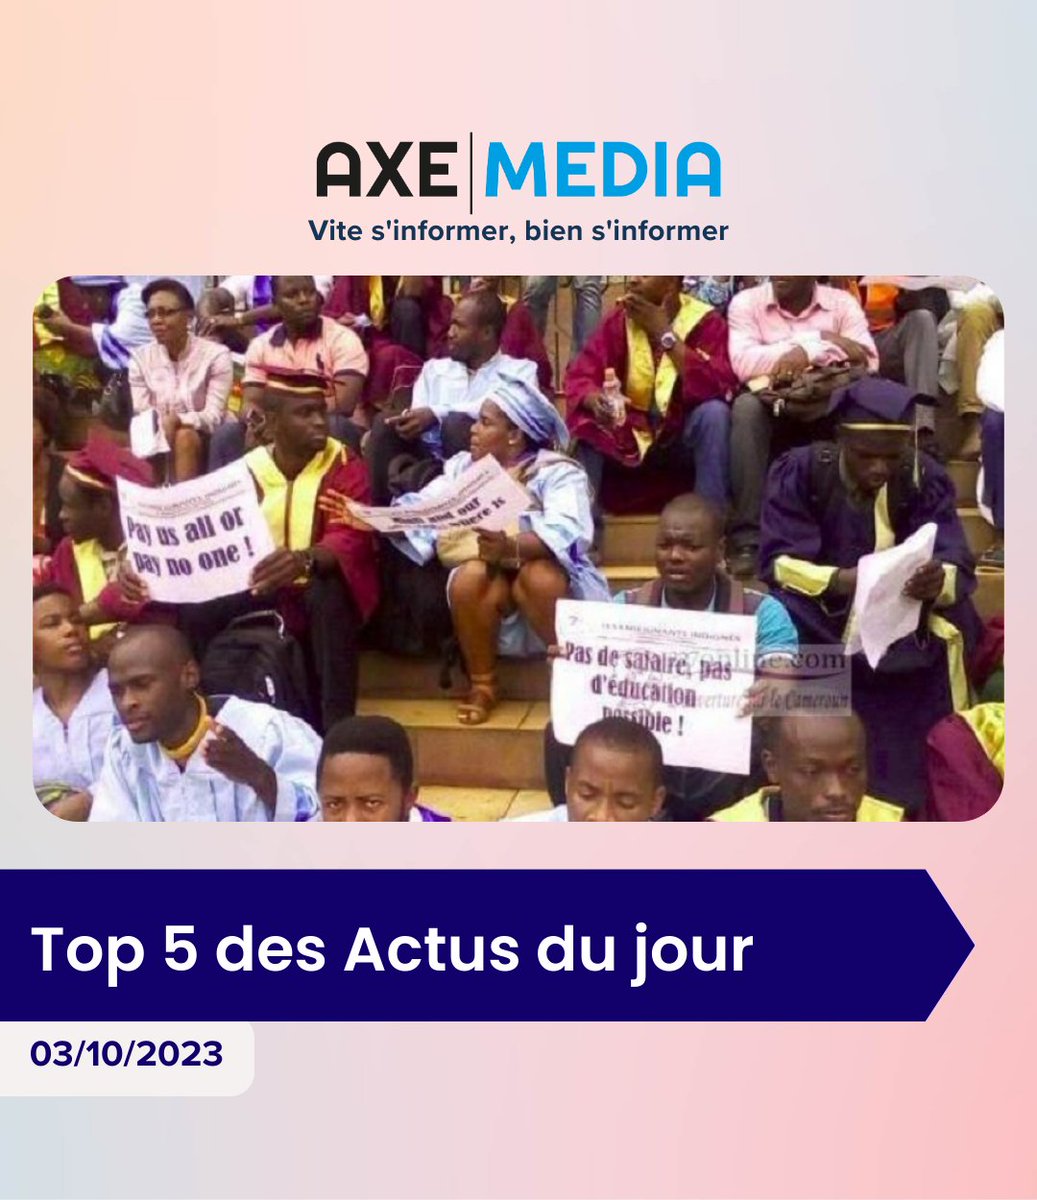 En une minute, votre résumé de l'actualité du jour 🚨
.

.

#axemedia #Cameroun #carburant #hausse #BEAC #monnaienumerique #blockchain #OTS #Tunisie #Immigration #Niger #Algerie